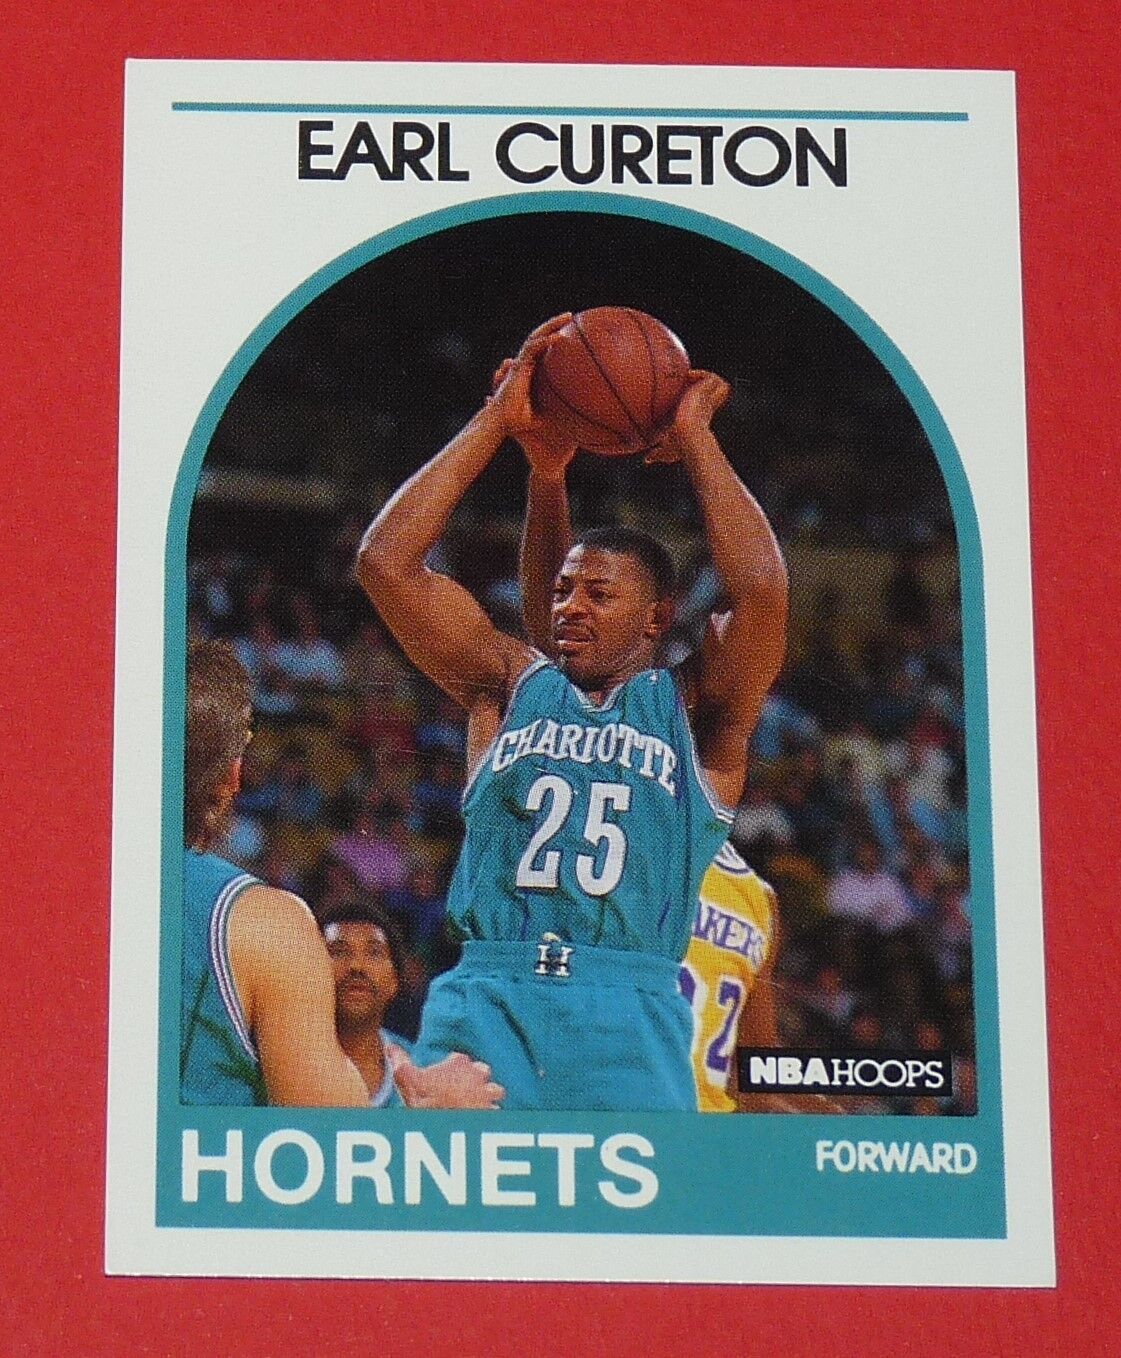 #112 EARL CURETON CHARLOTTE HORNETS 1989 NBA HOOPS BASKETBALL CARD